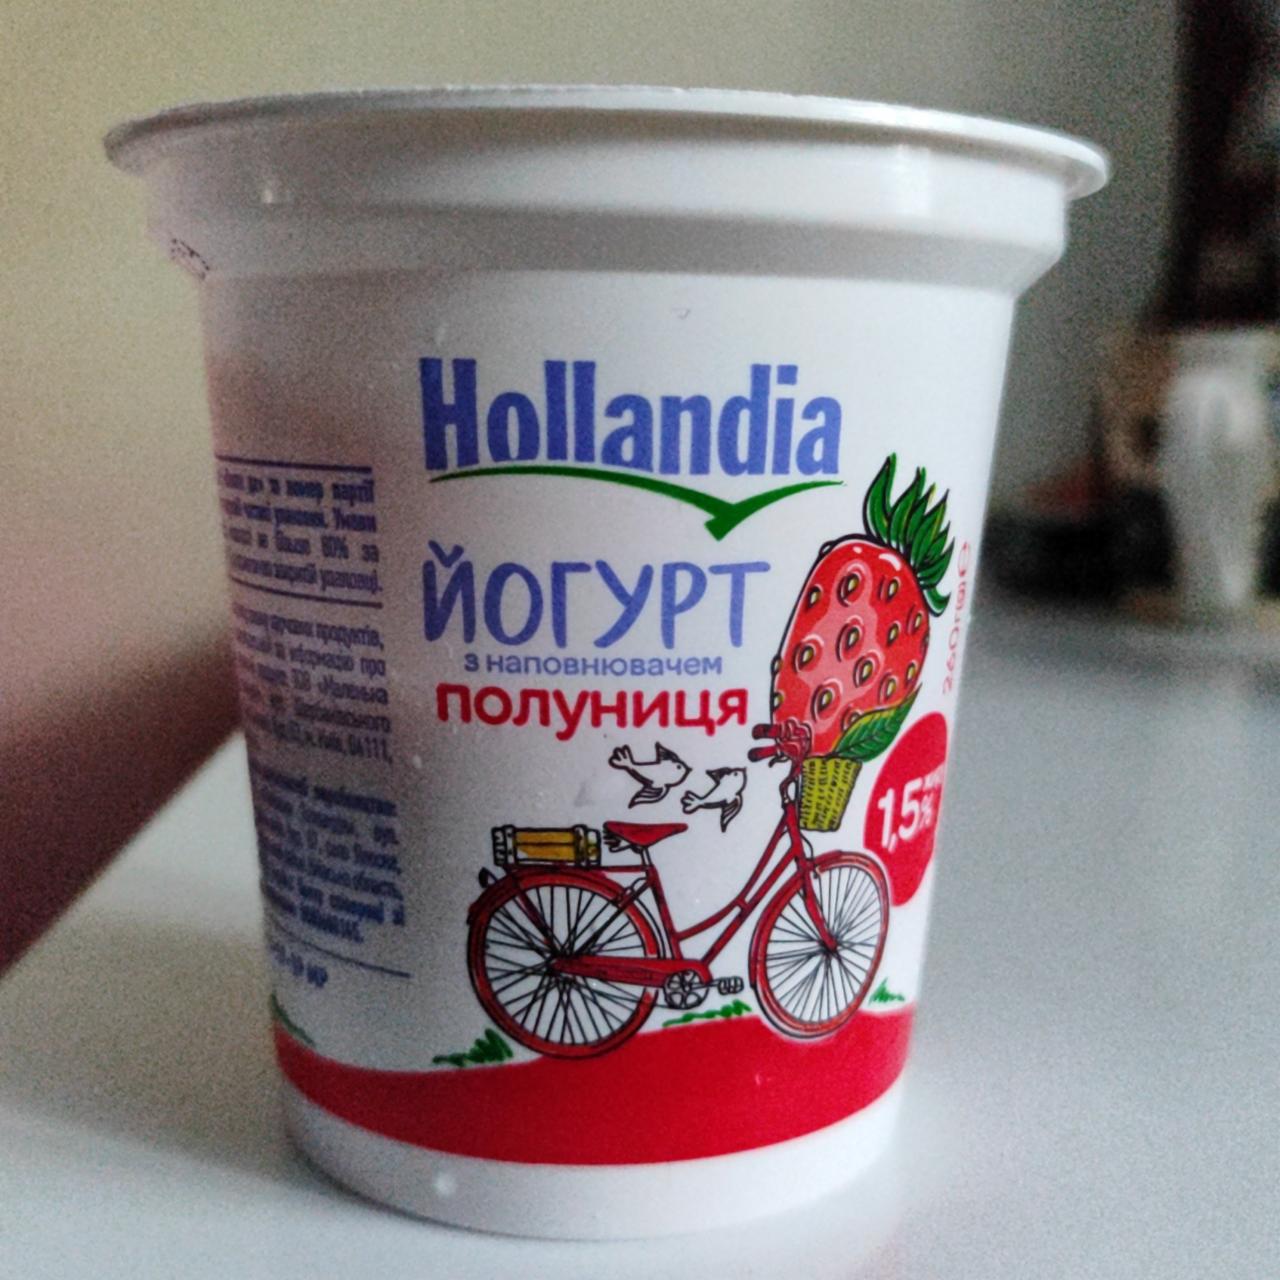 Фото - Йогурт 1.5% з наповнювачем полуниця Hollandia